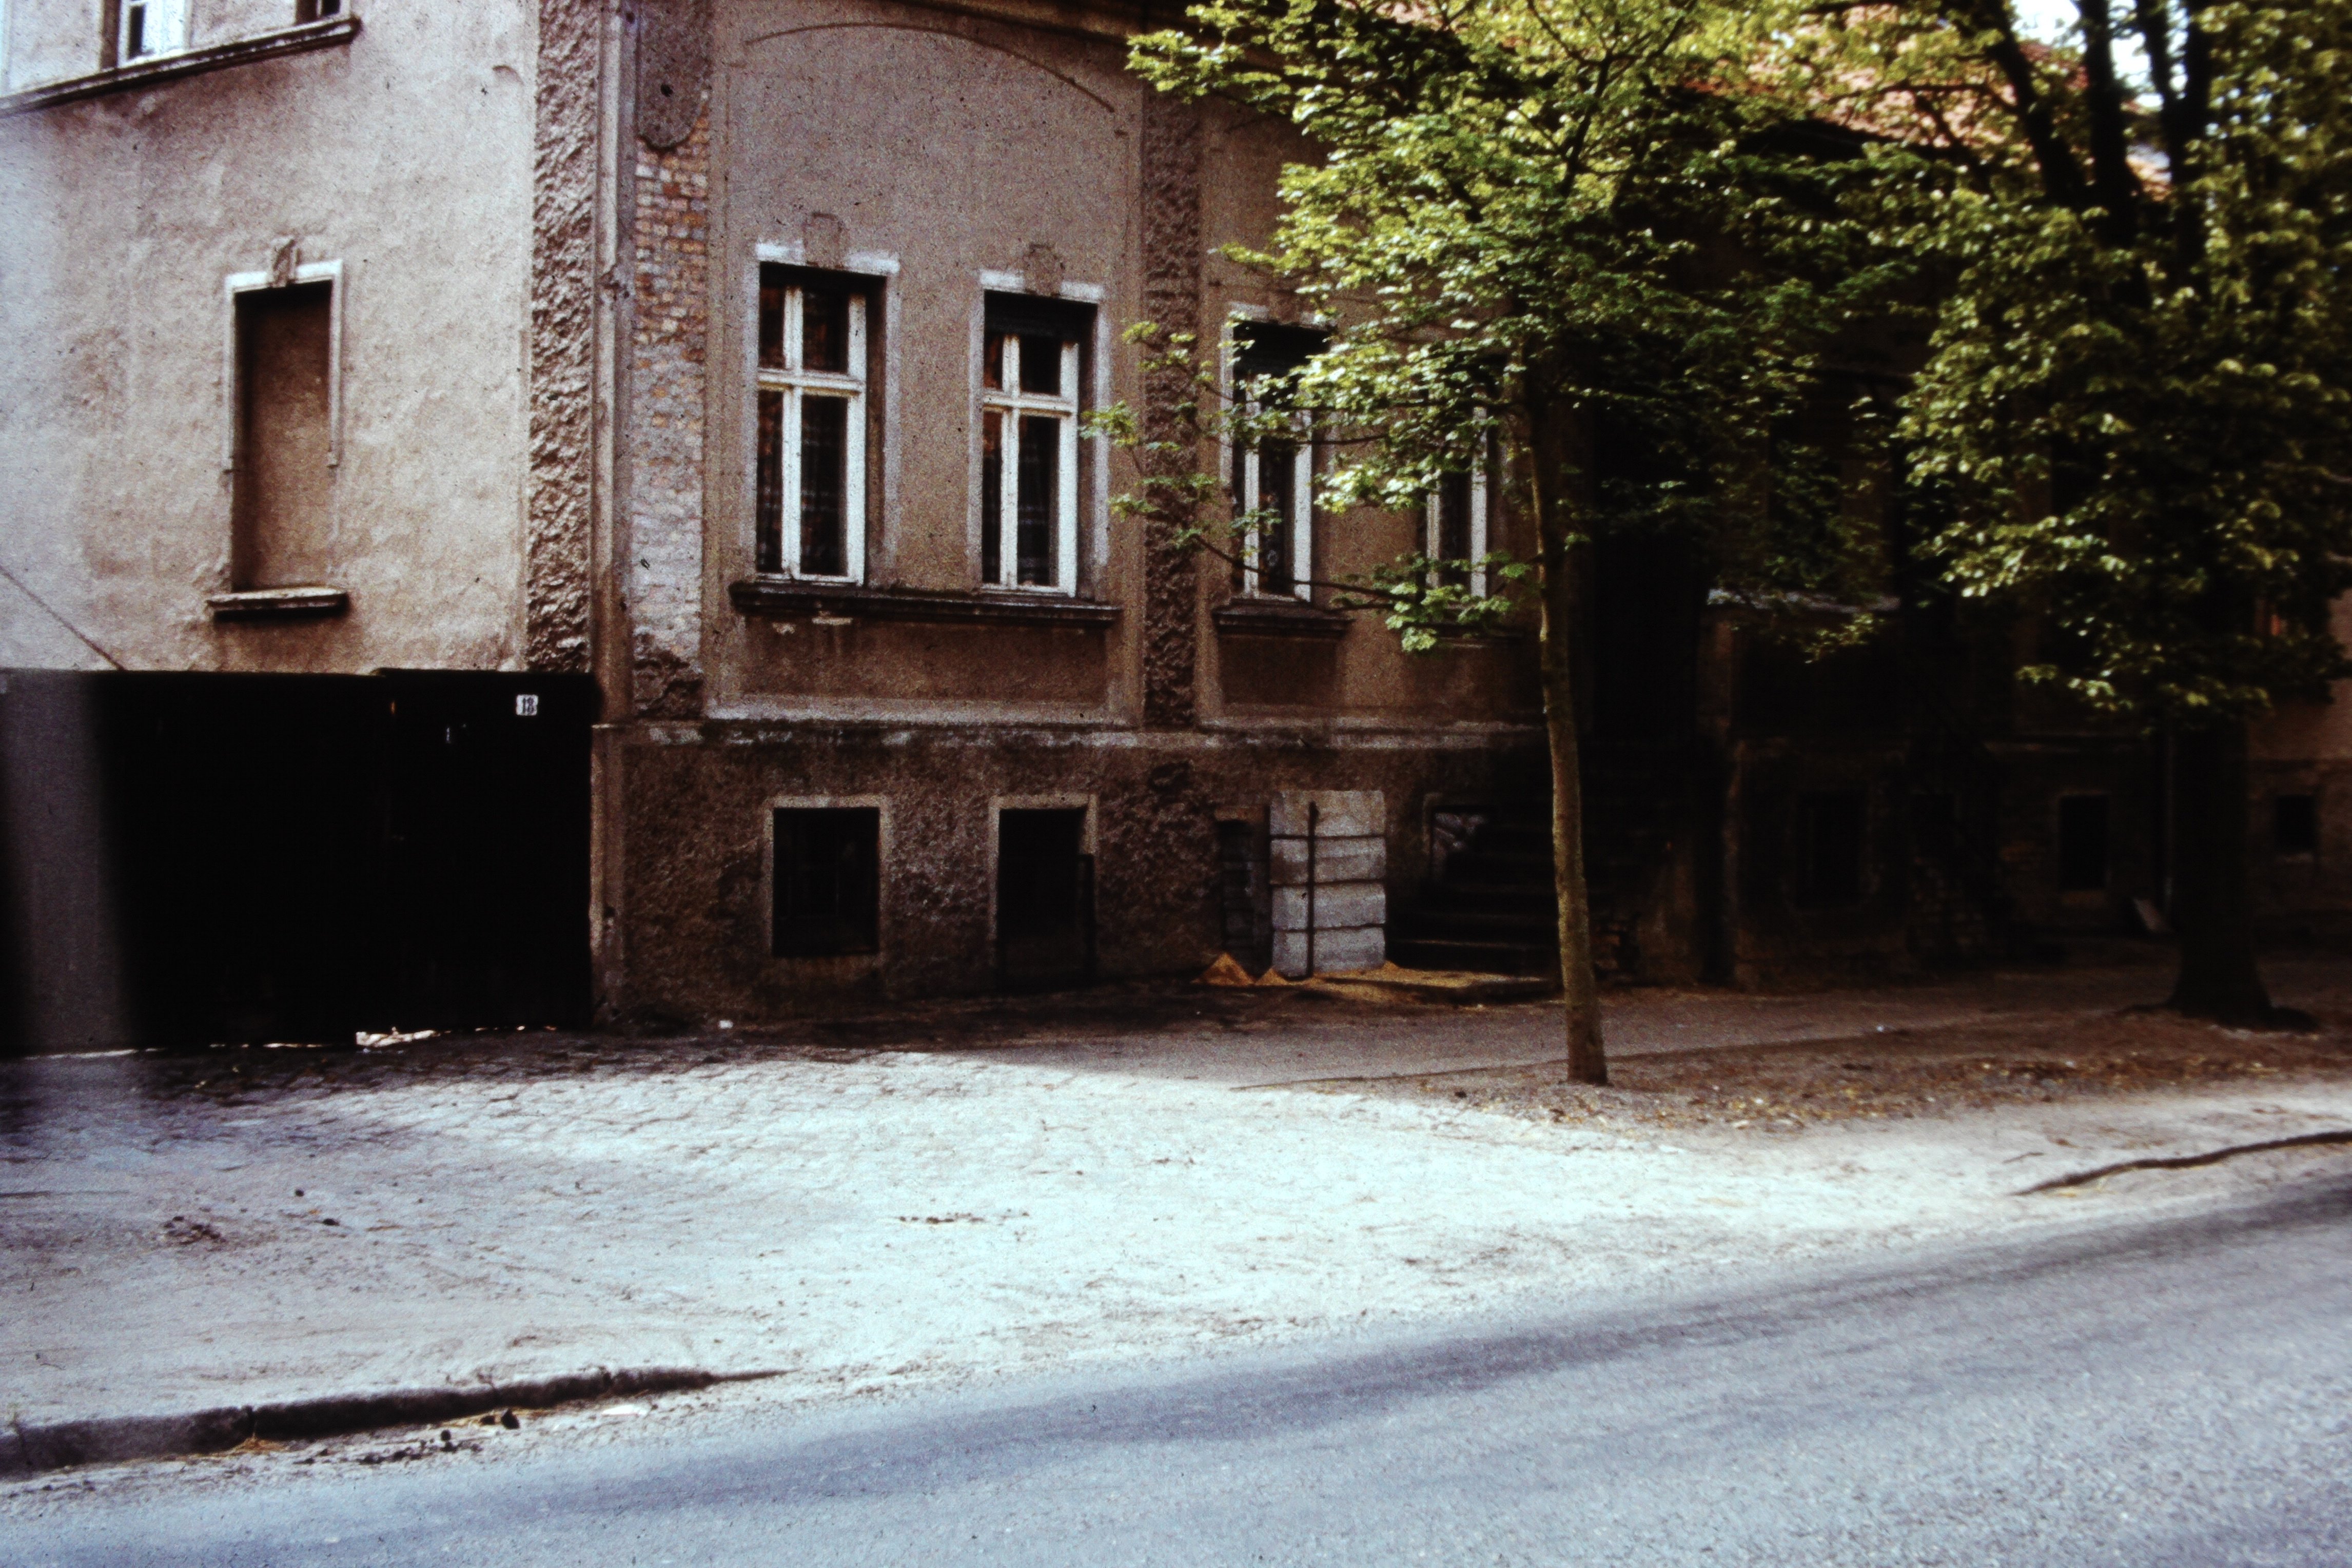 Atomschlagübung "Dosse 83": Verbarrikadierung von Kellerfenstern (DDR Geschichtsmuseum im Dokumentationszentrum Perleberg CC BY-SA)